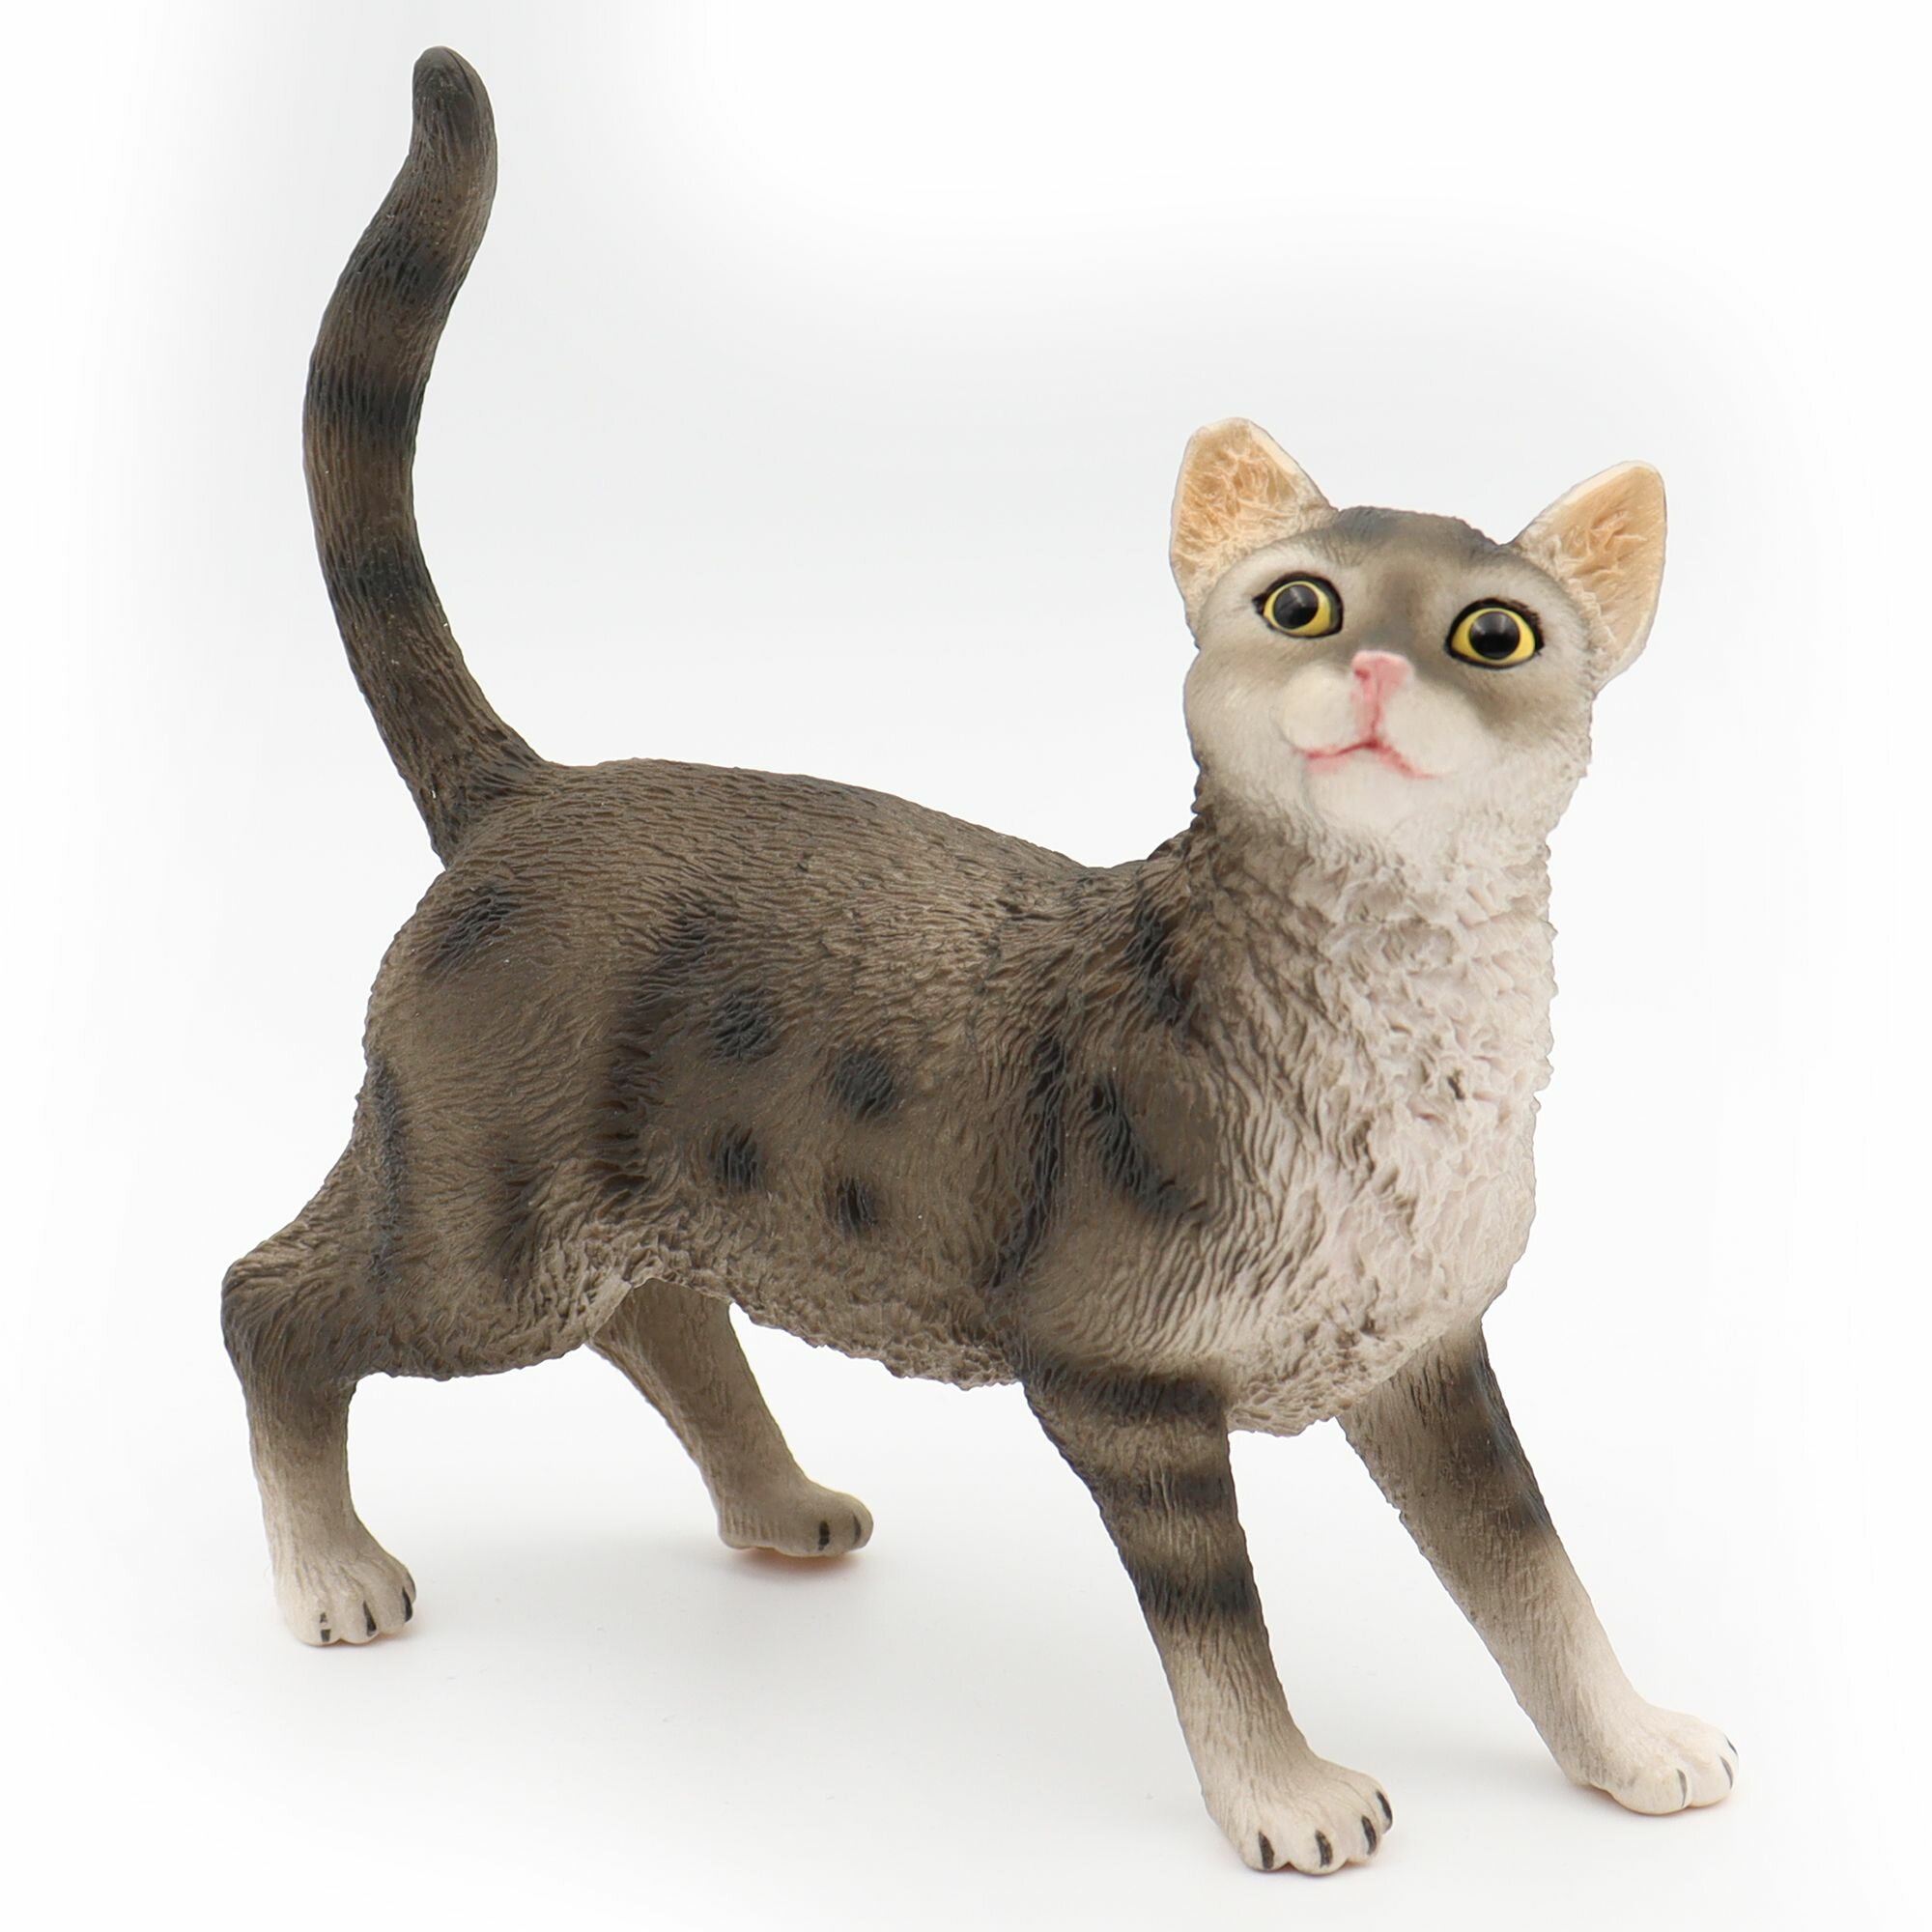 Фигурка животного Zateyo Любопытный Кот, игрушка для детей коллекционная, декоративная 15х5.3х14.7 см